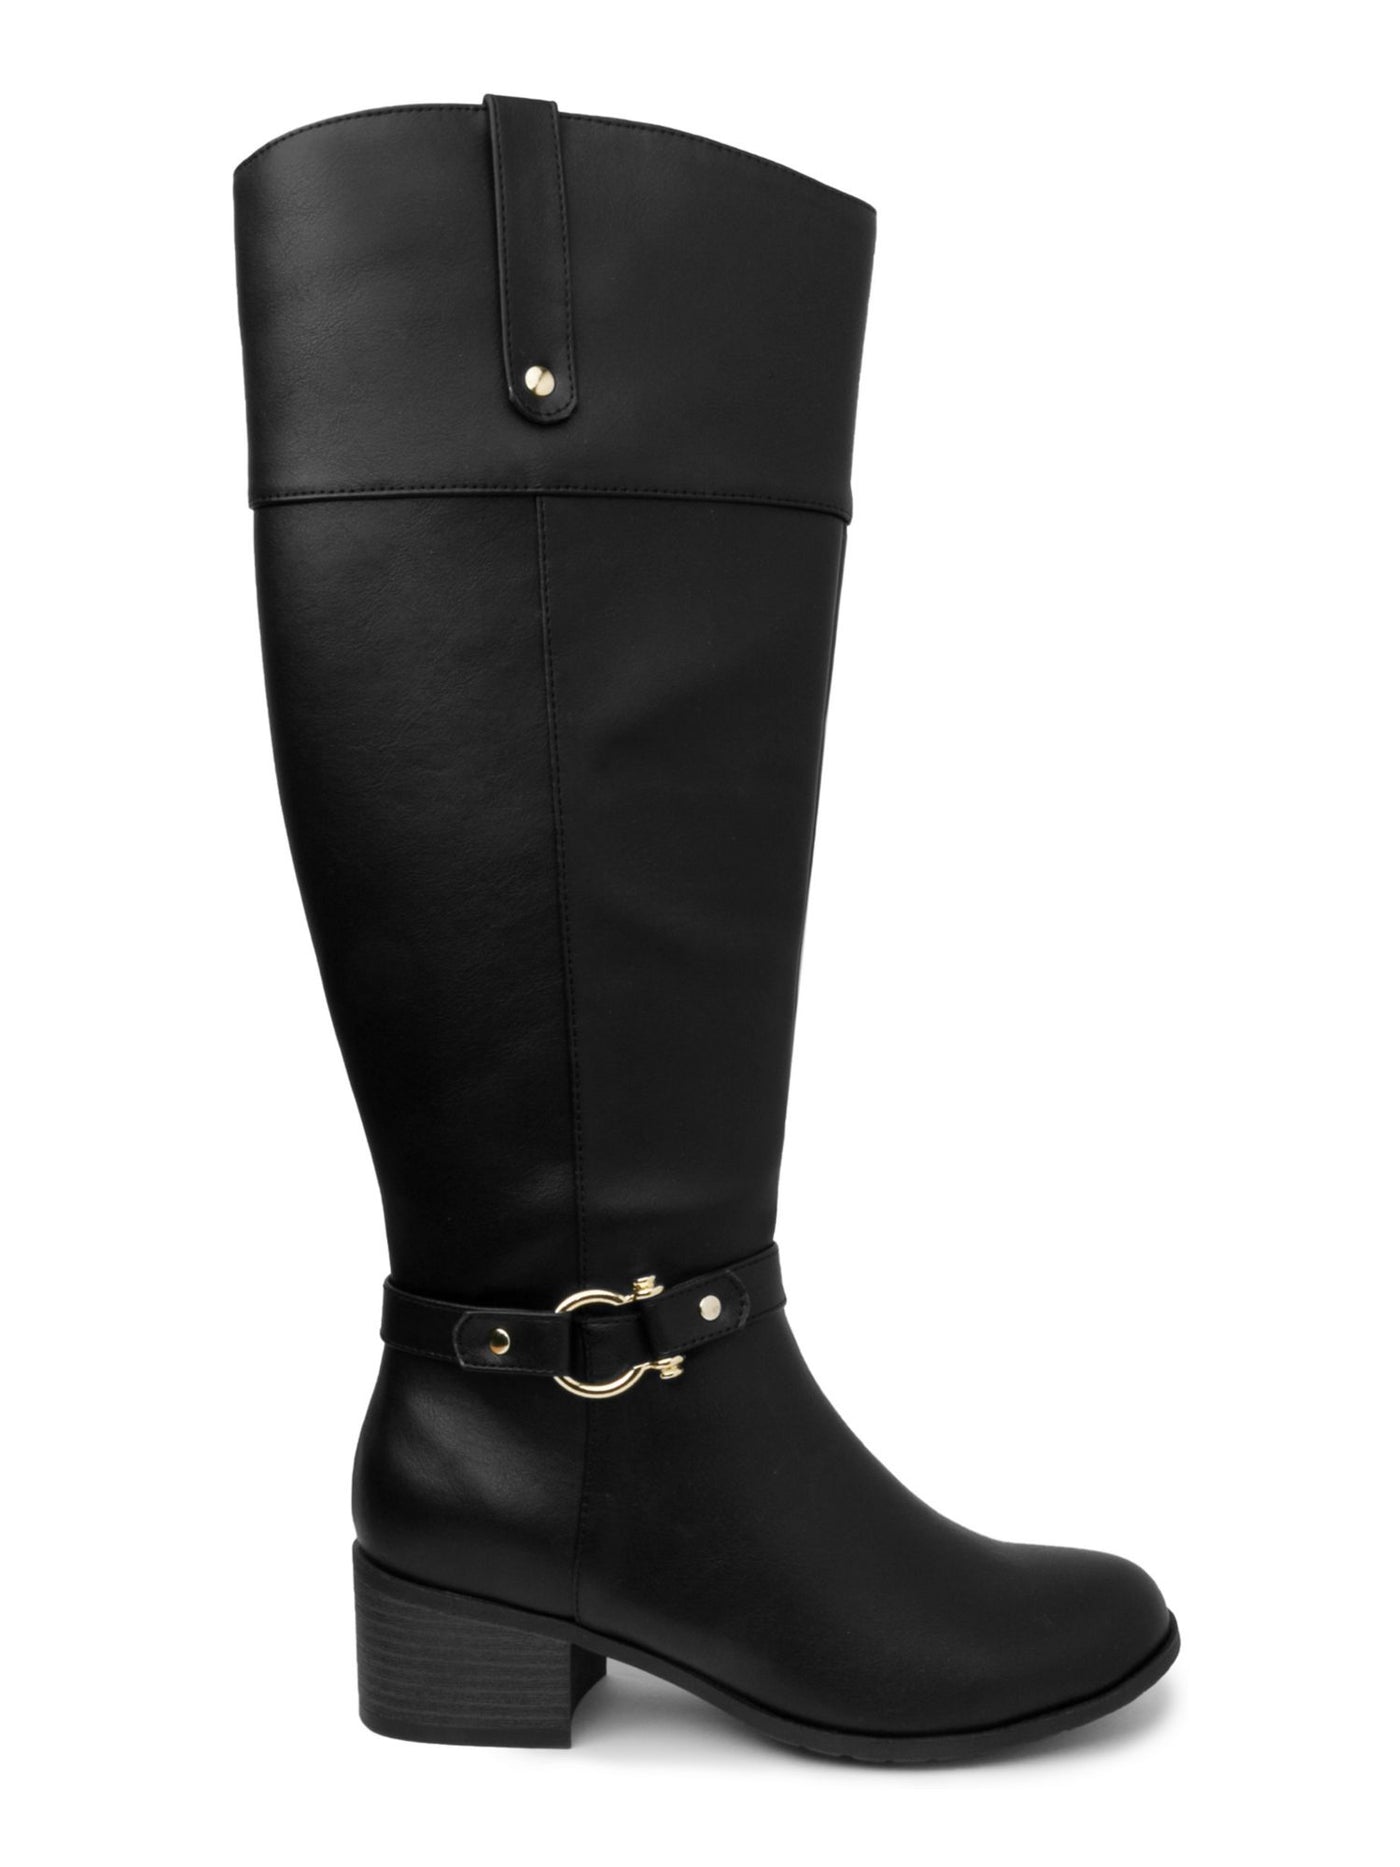 KAREN SCOTT Womens Black Buckle Accent Stretch Round Toe Block Heel Zip-Up Heeled Boots 7